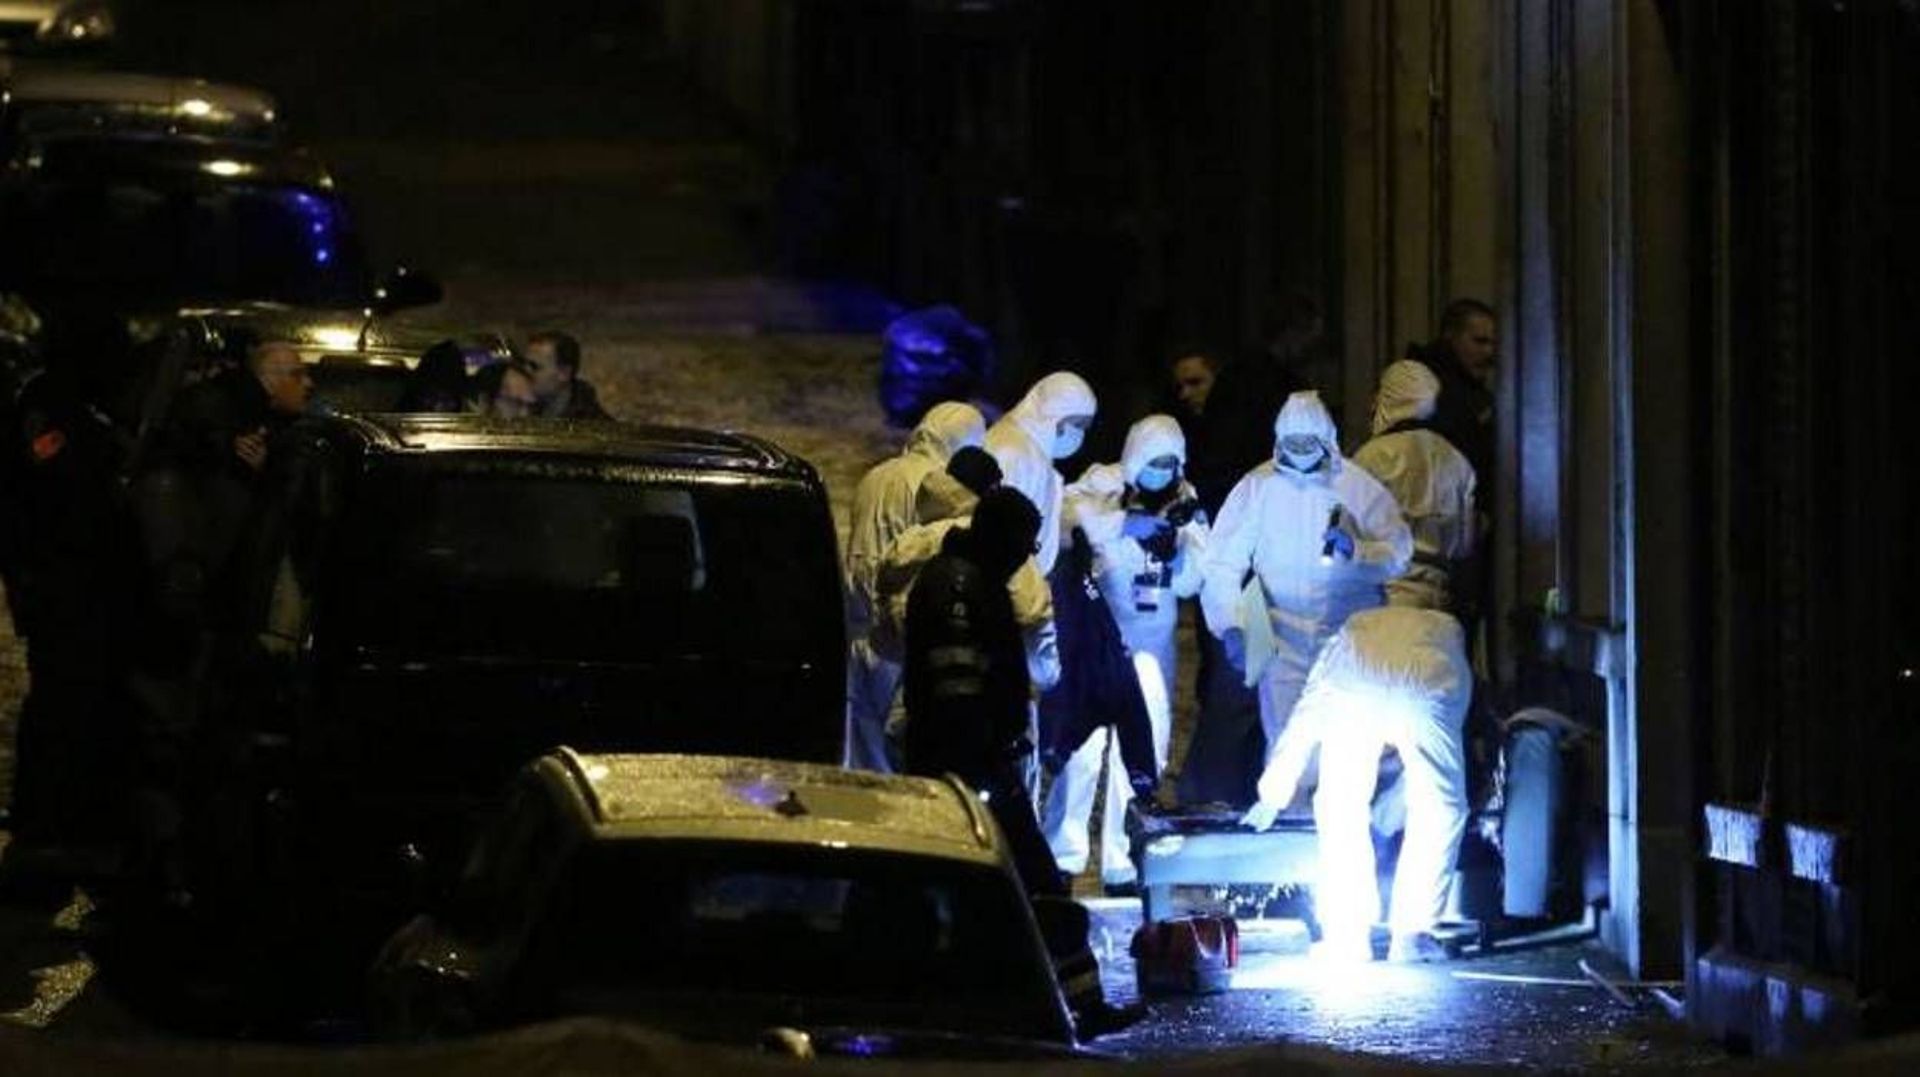 Verviers: 6 mois de prison ferme pour avoir crié "Vive l'Islam" lors de l'opération antiterroriste